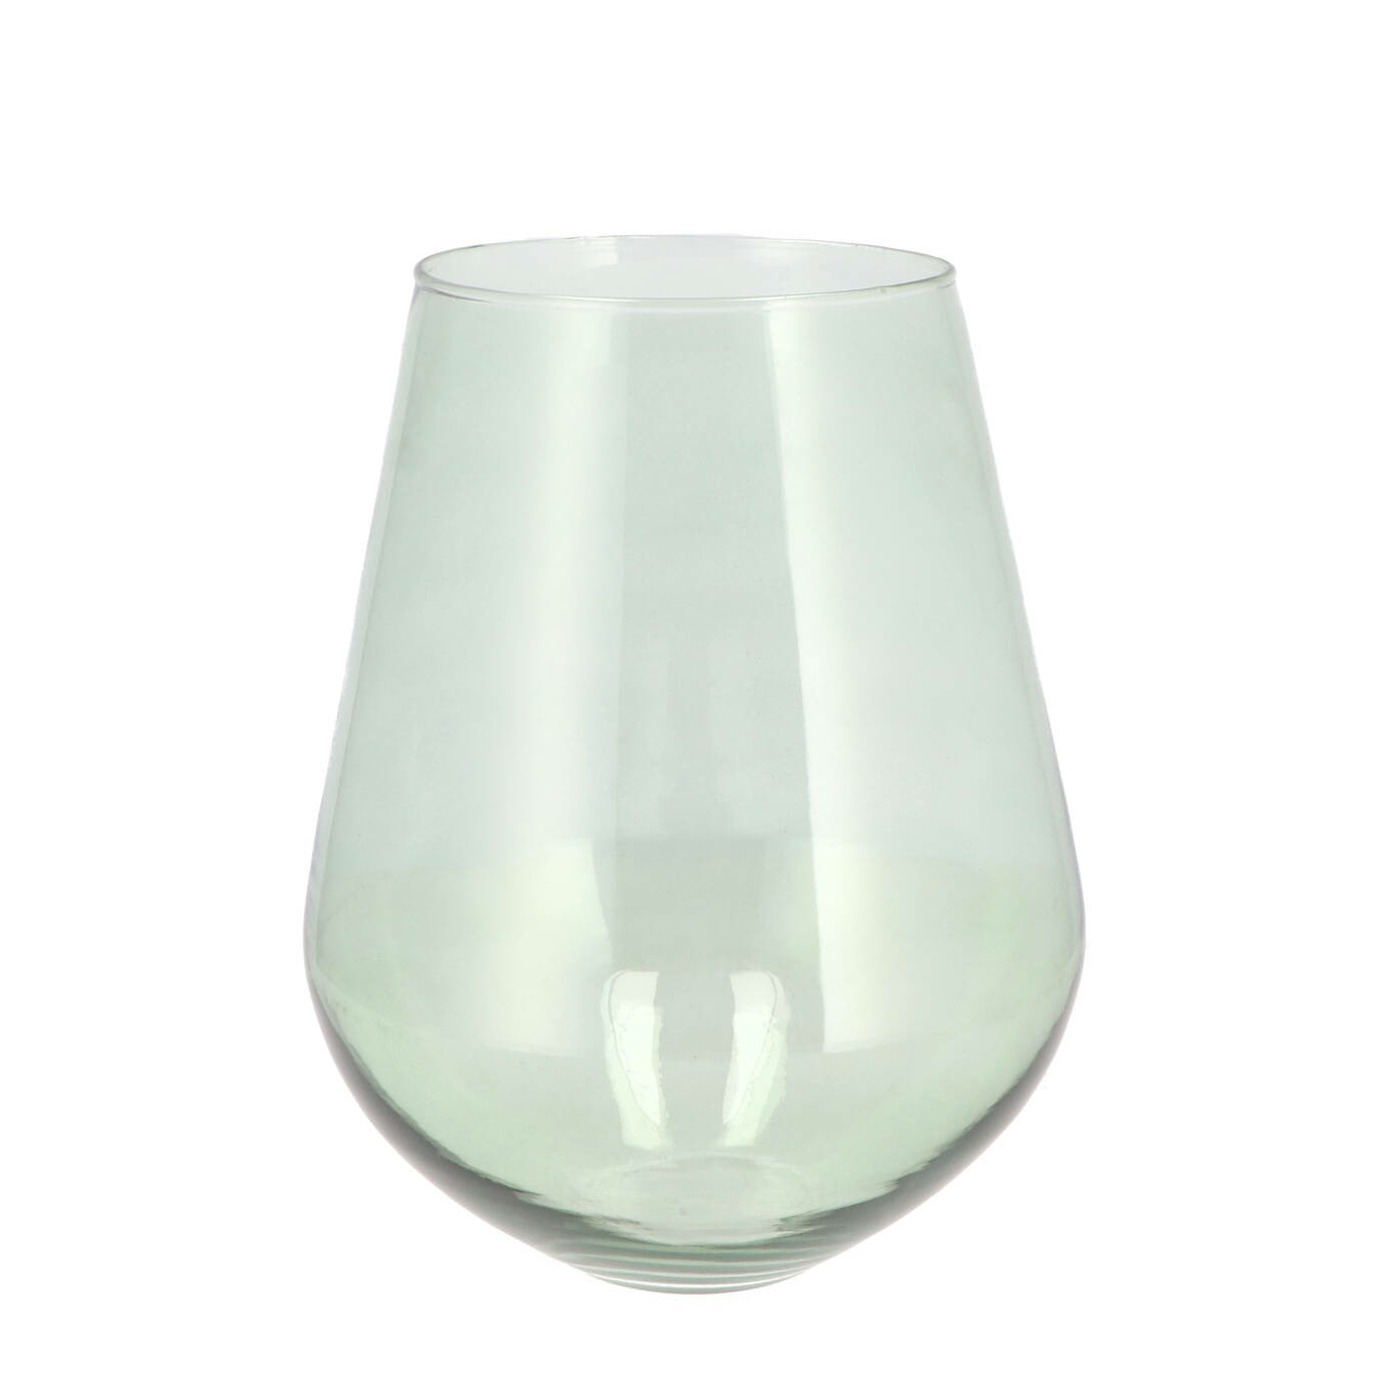 DK Design Bloemenvaas Mira - vaas druppel vorm model - groen glas - D20 x H22 cm -